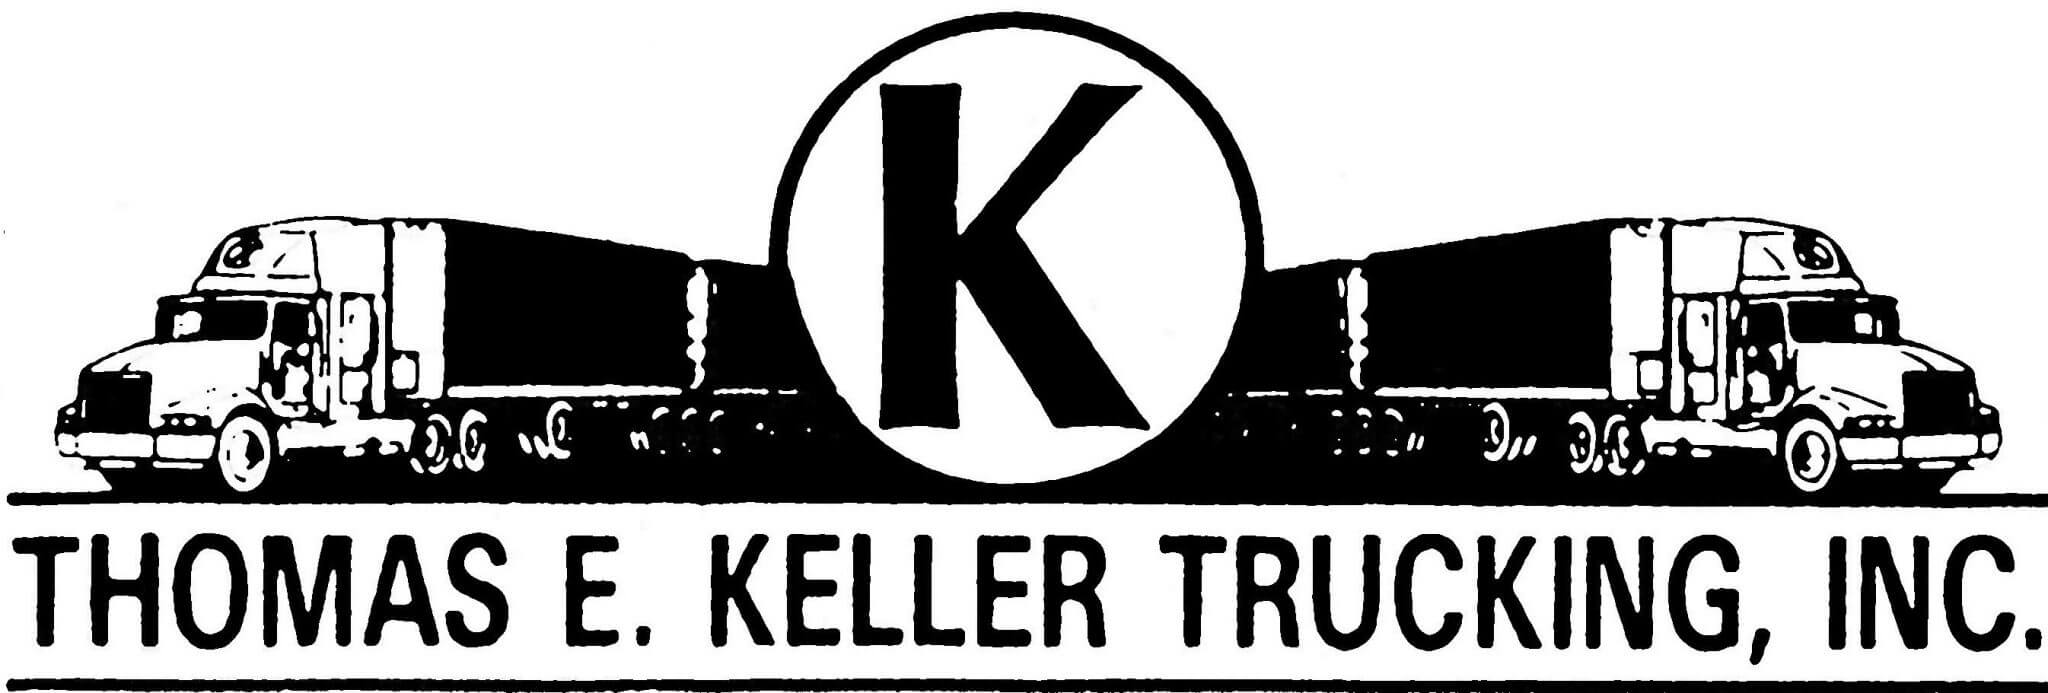 Original logo for Thomas E Keller Trucking when incorporating in 1978